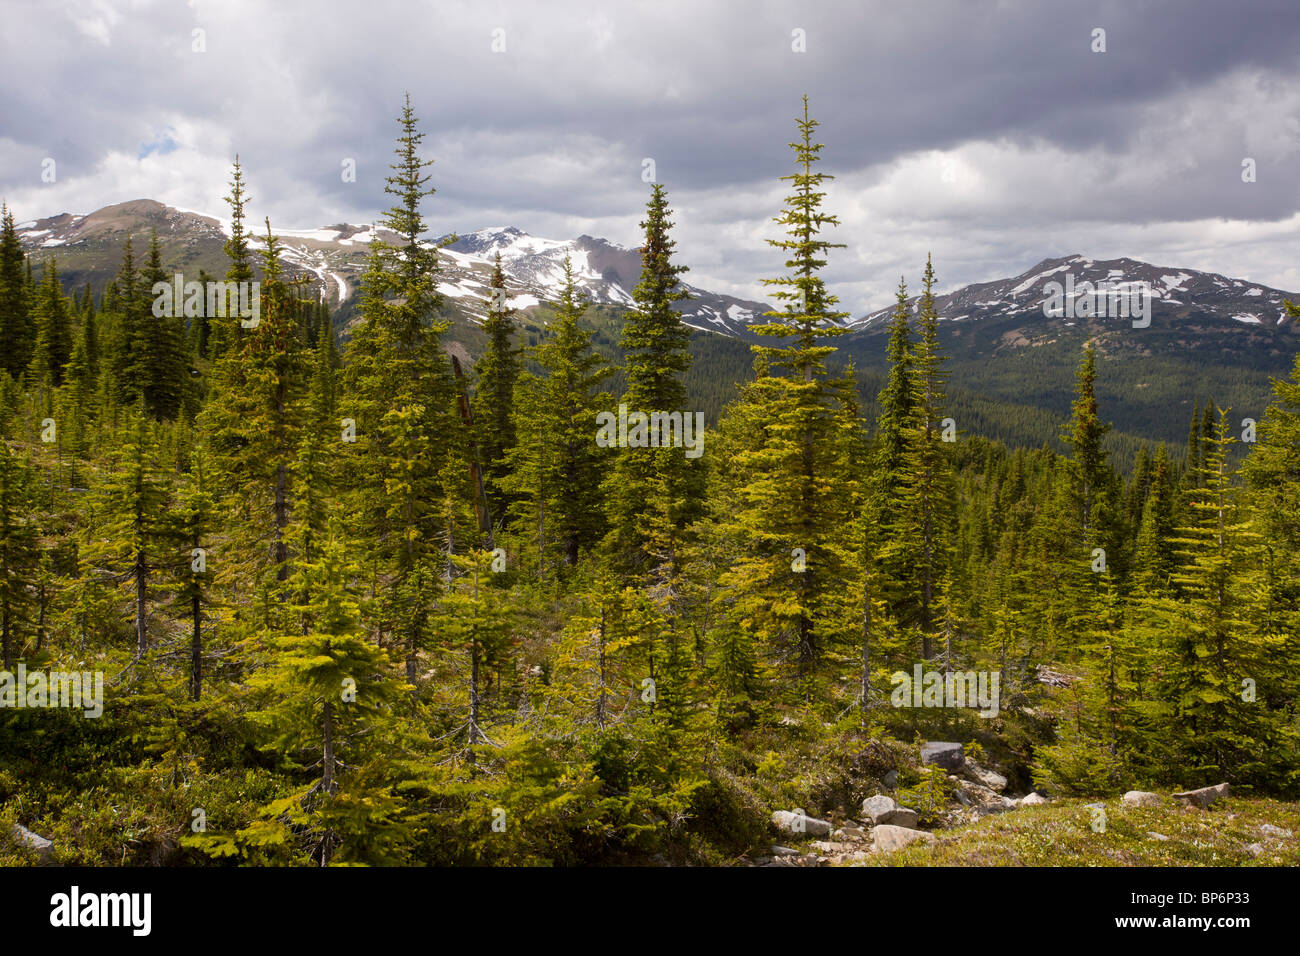 Forêt de conifères mixtes (épicéa, sapin et pin) dans les collines Bald au-dessus du lac Maligne, parc national Jasper, Rocheuses, Canada Banque D'Images